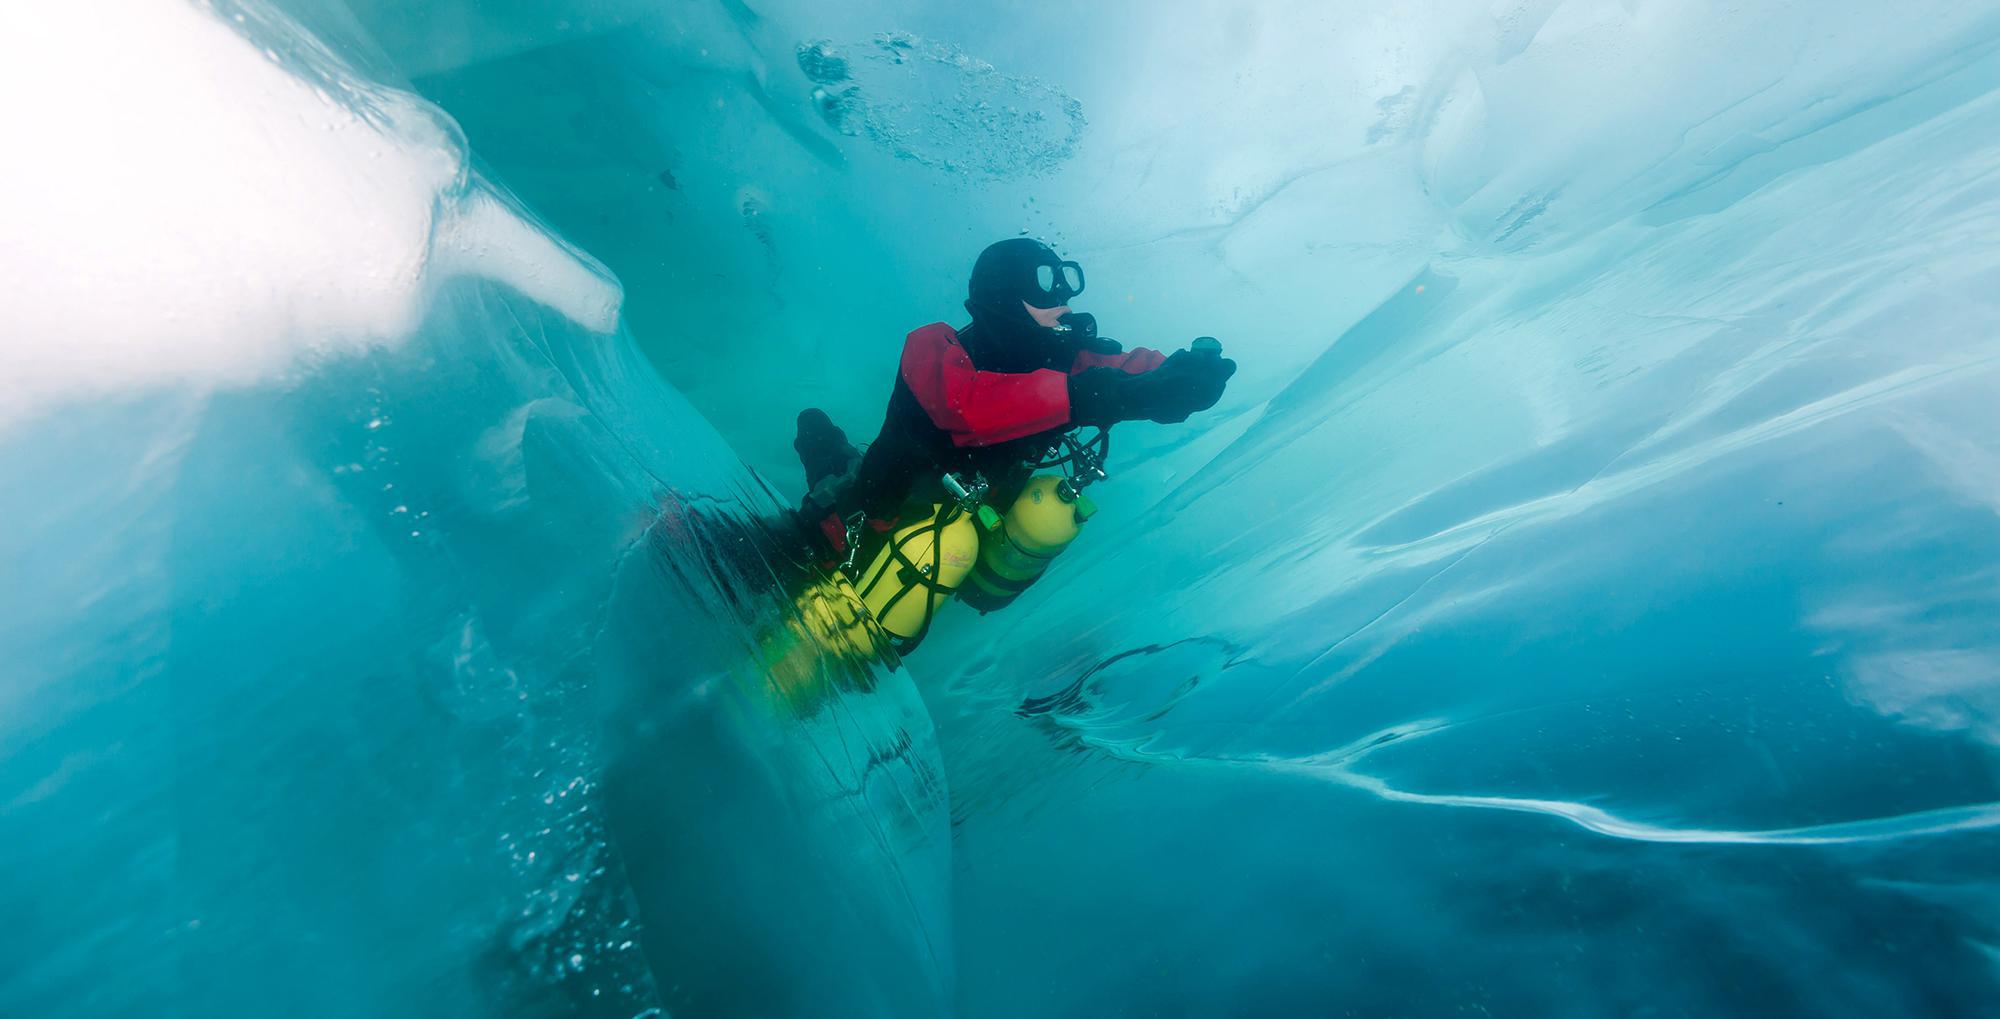 Le plongeur est bien dans l'eau, entouré d'énormes blocs de glace ! Une plongée magique dans un milieu parfaitement solide… La glace est partout et nous nous faufilons entre les blocs de glace comme dans un labyrinthe de la foire du trône. Lac Baïkal - Sibérie – Russie